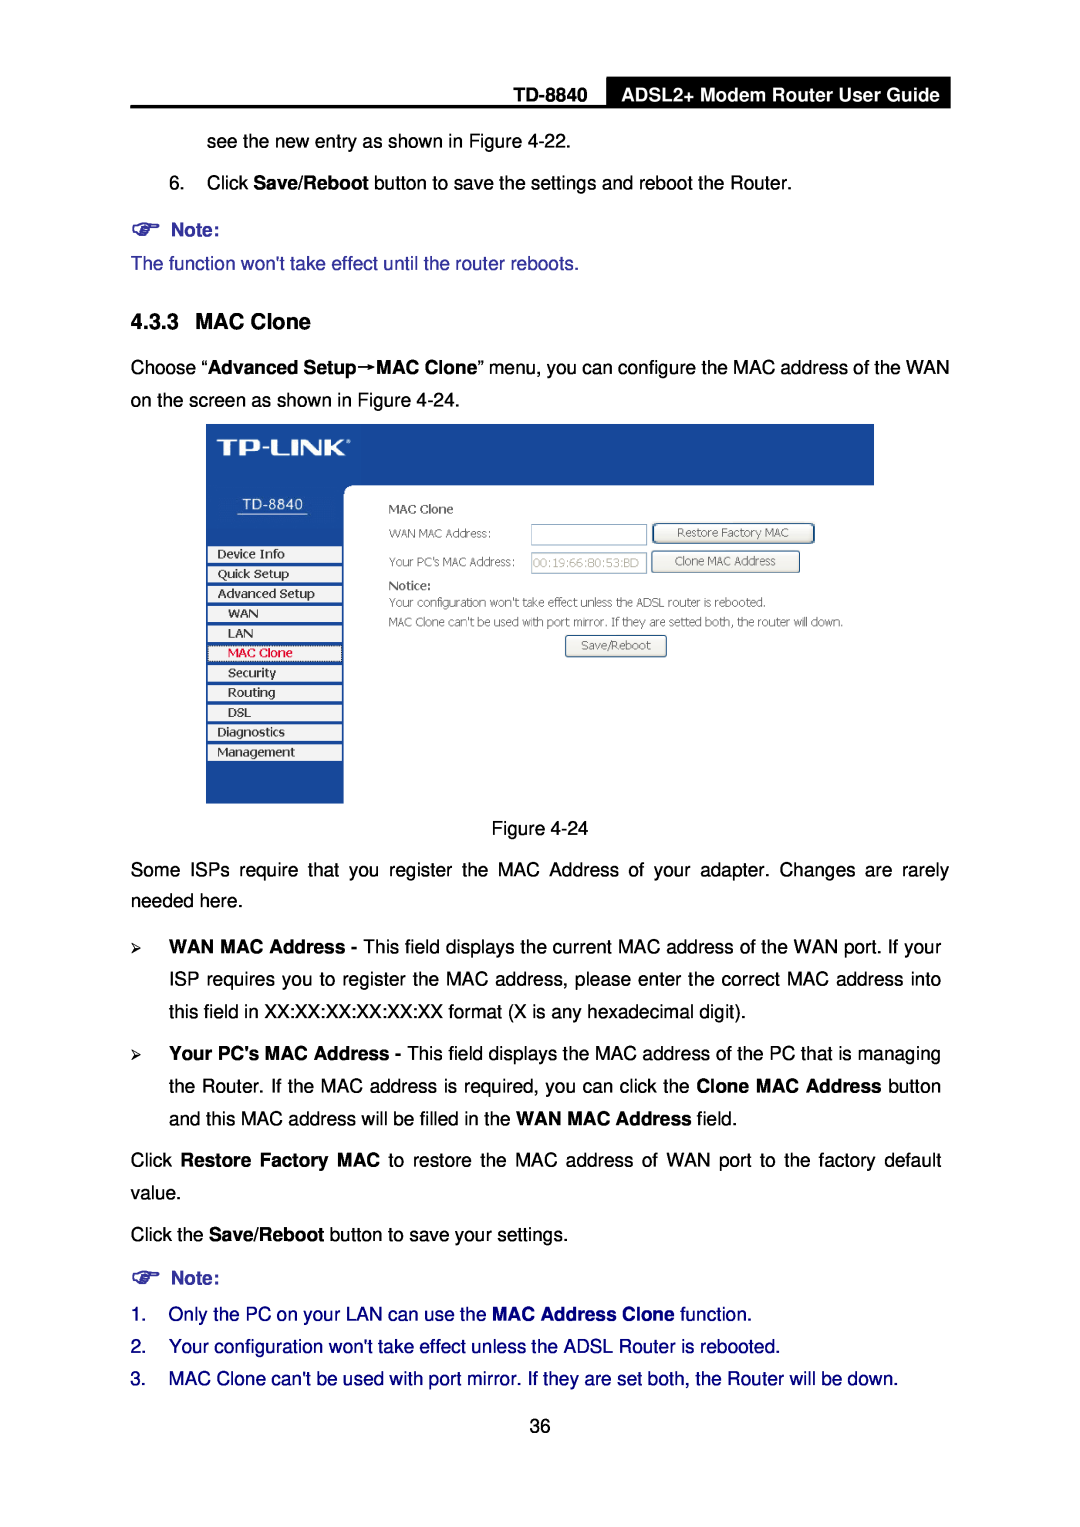 TP-Link TD-8840 manual MAC Clone, ADSL2+ Modem Router User Guide 